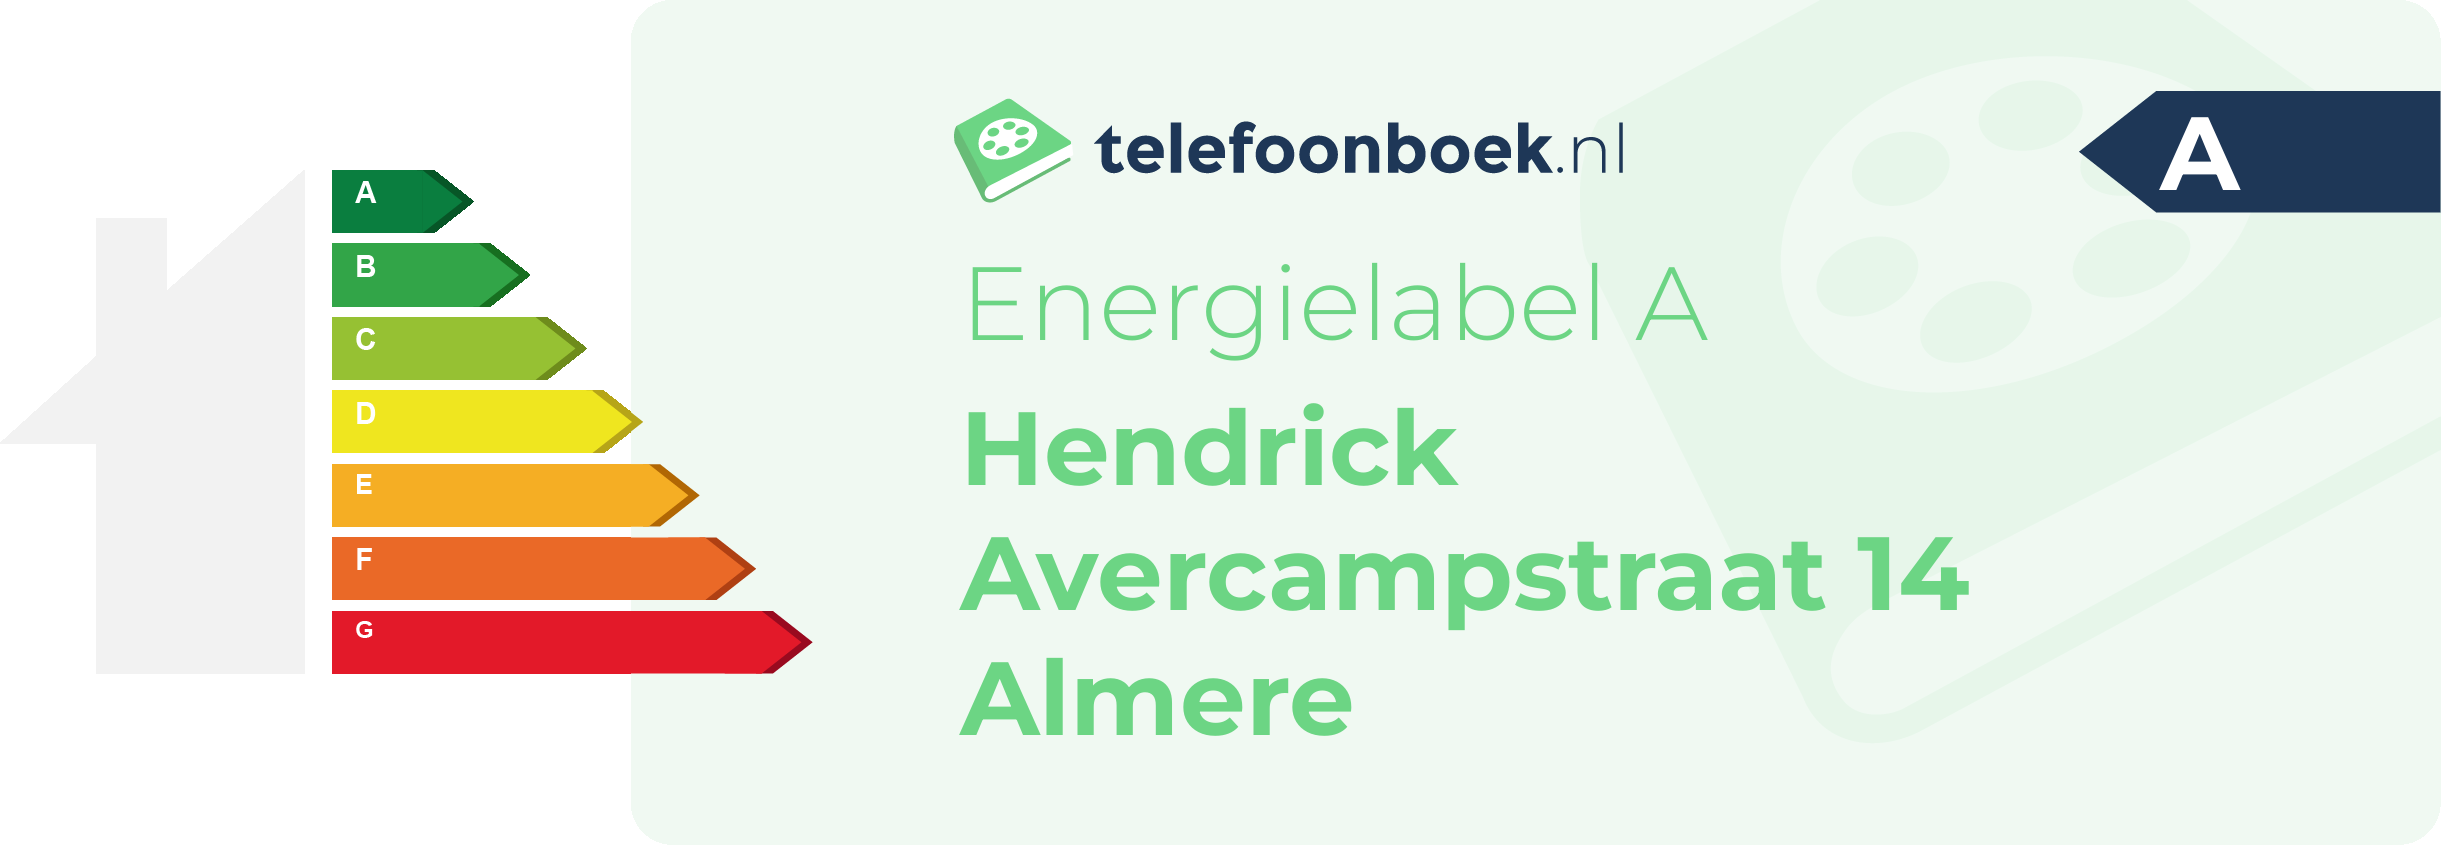 Energielabel Hendrick Avercampstraat 14 Almere